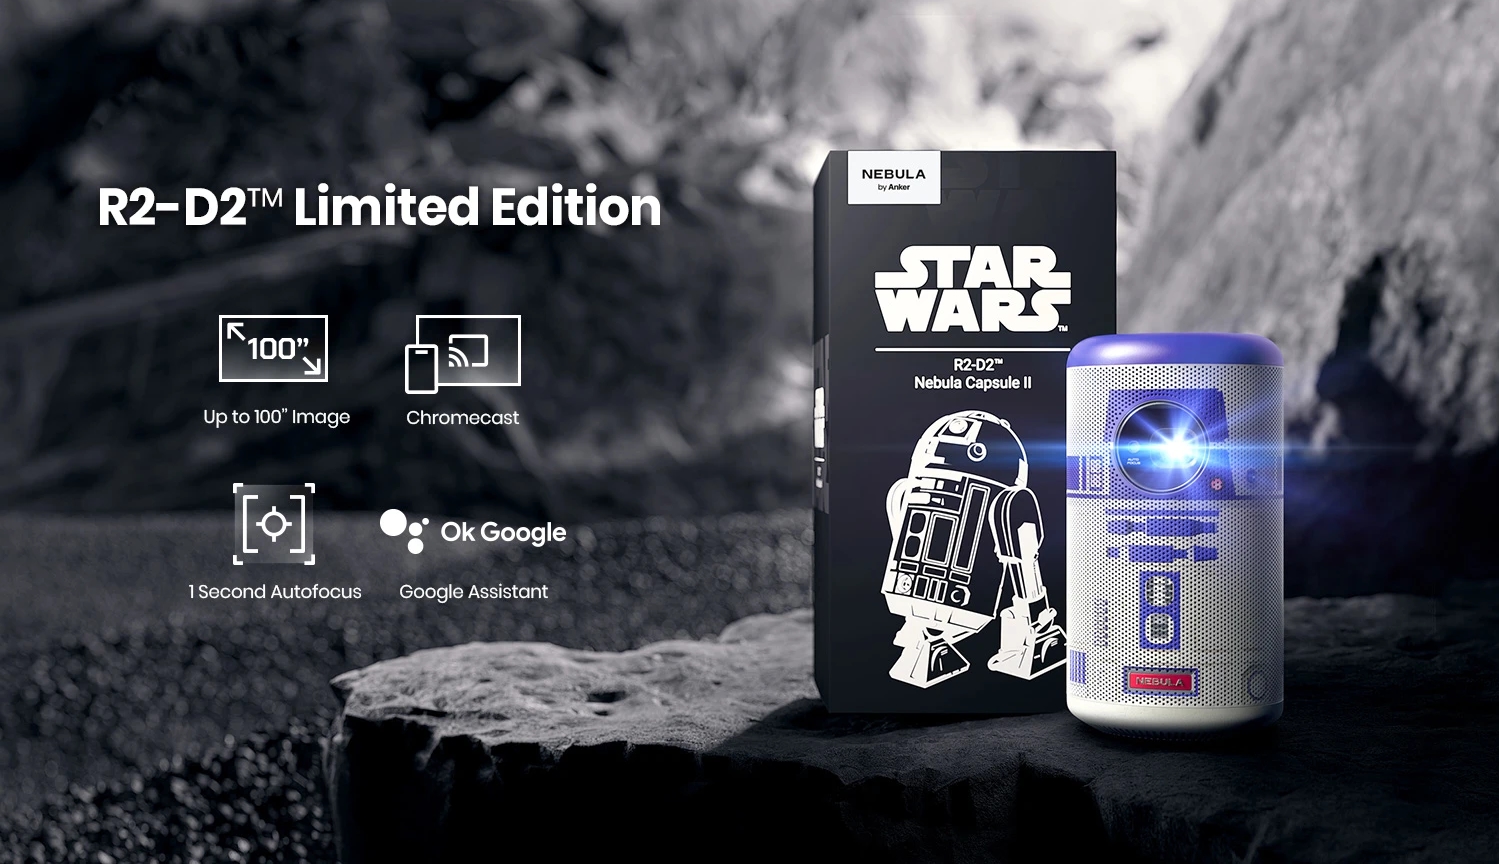 Dla prawdziwych fanów Star Wars: Anker prezentuje specjalną wersję projektora Nebula Capsule II w kolorystyce droida R2-D2.